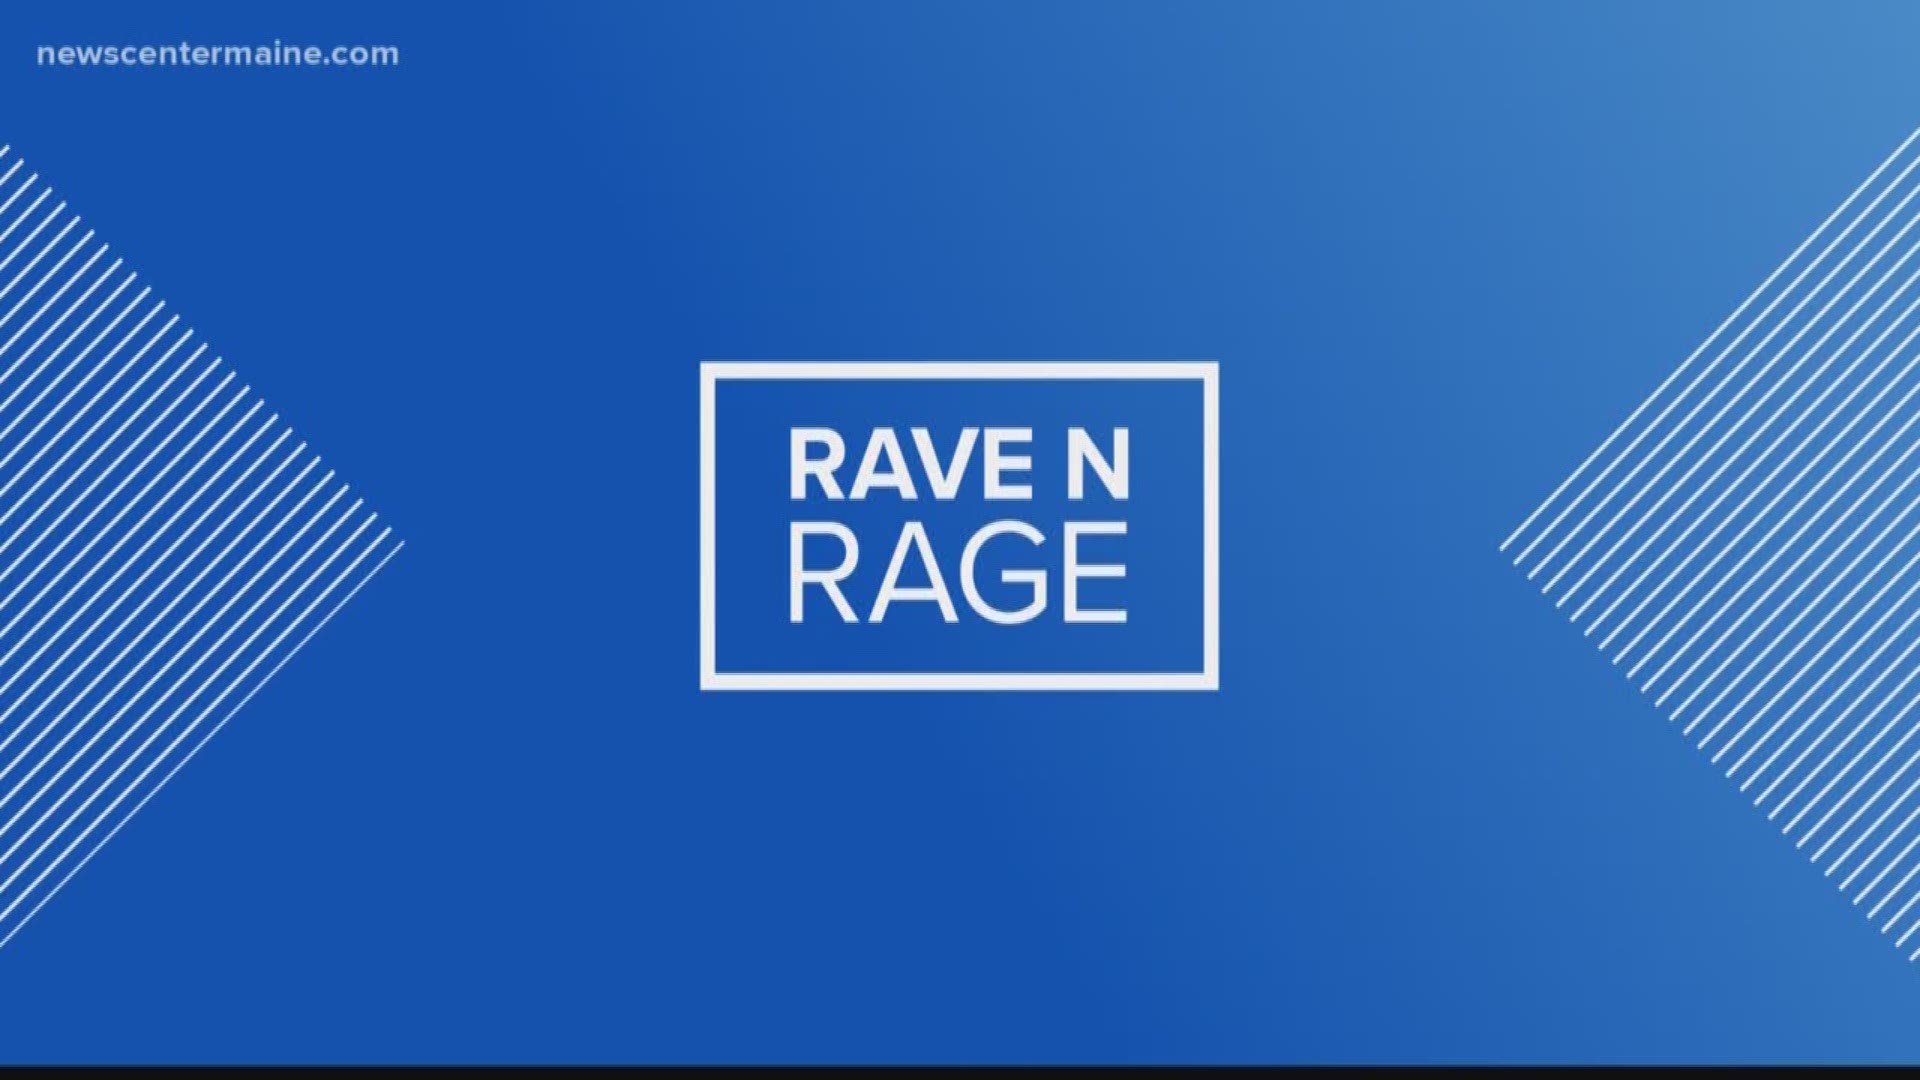 Rave N Rage